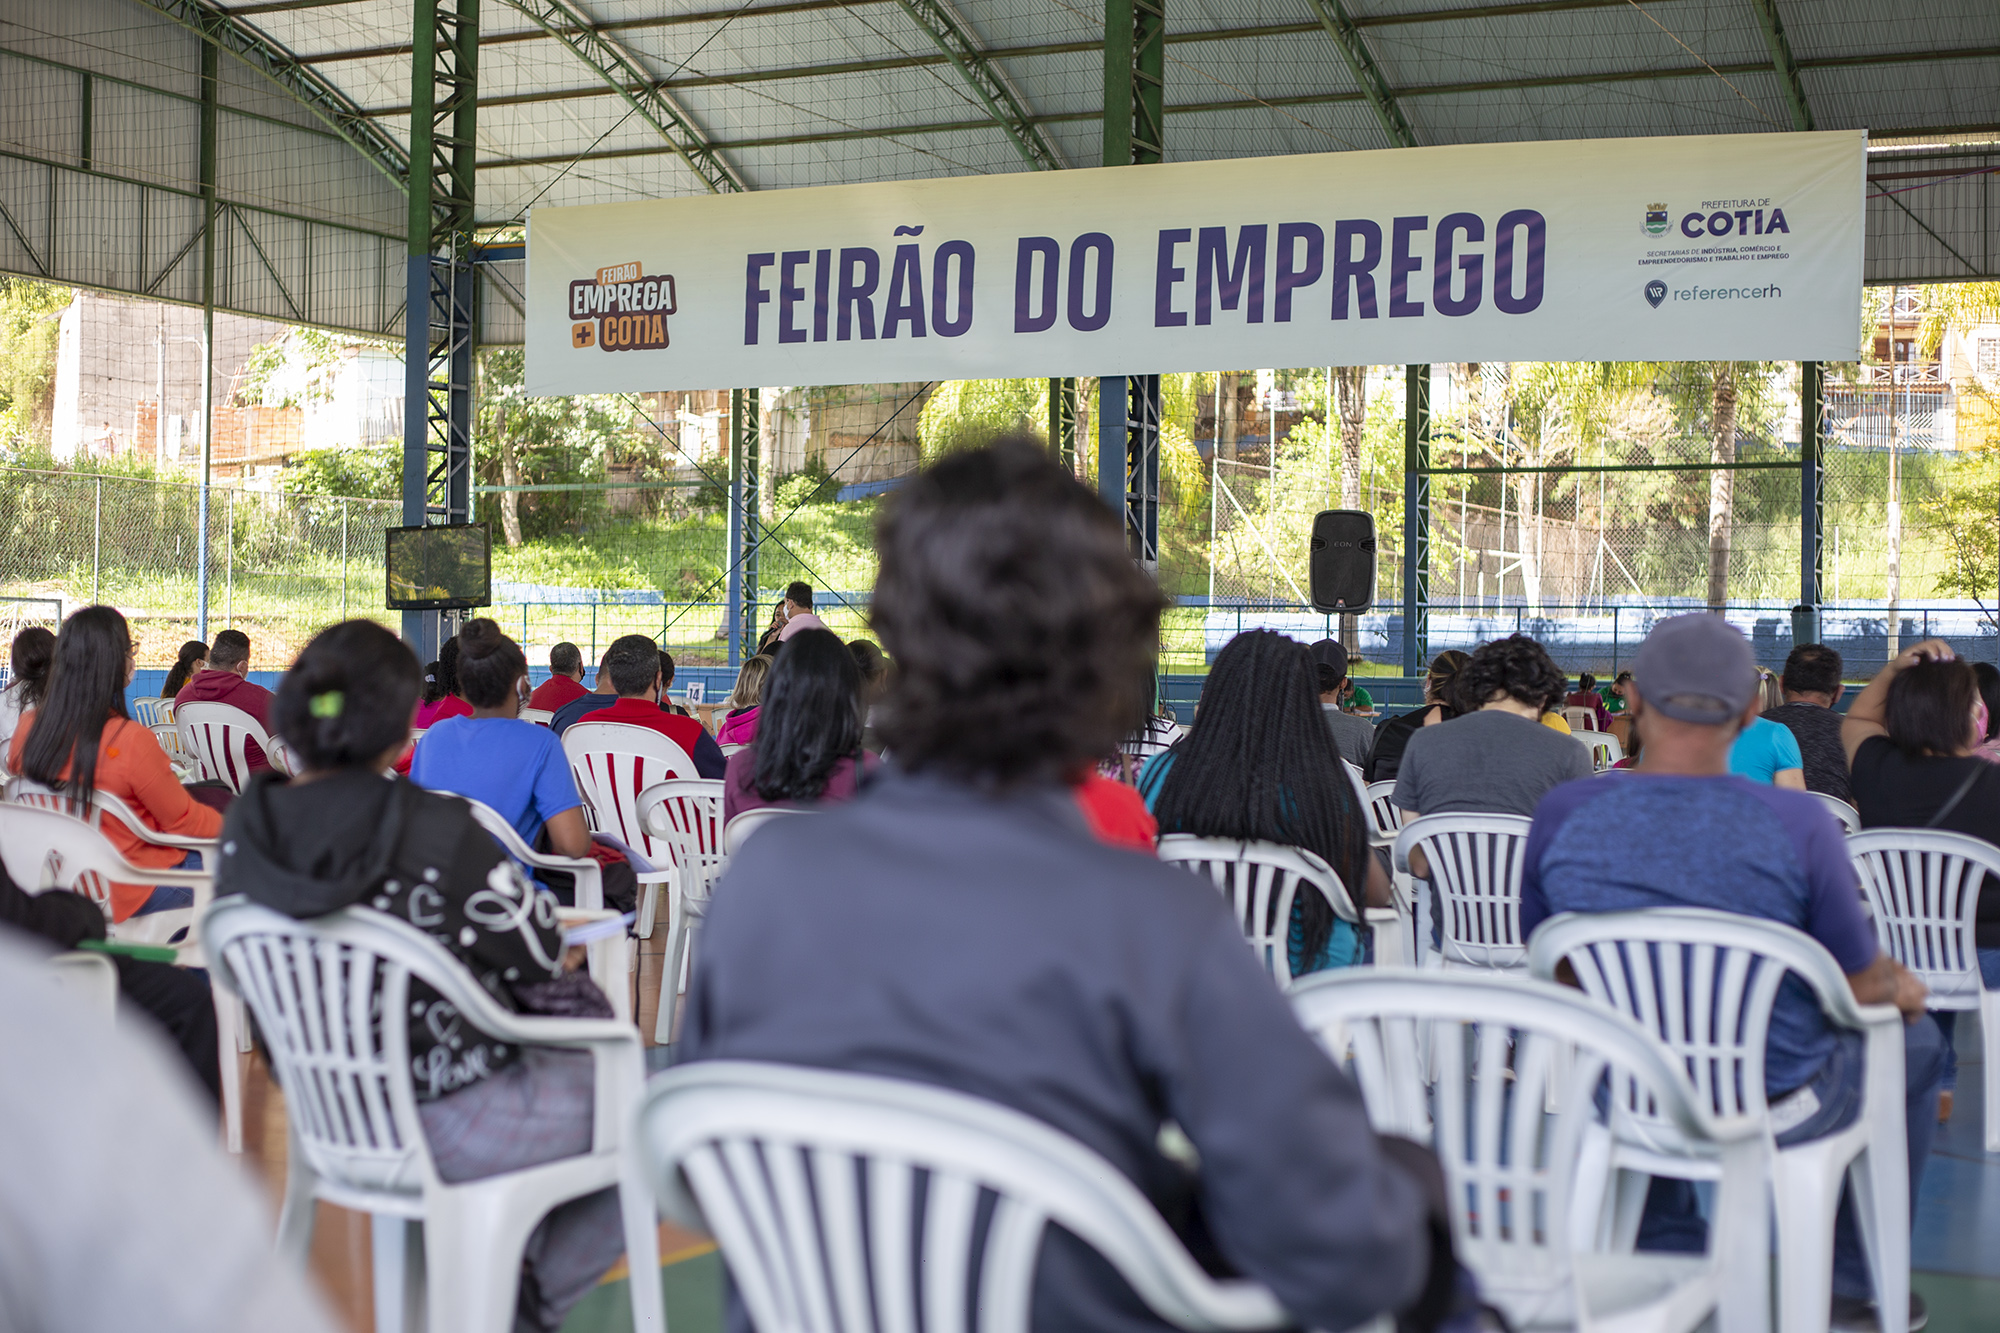 “Feirão Emprega + Cotia” encaminhou mais de 450 pessoas para seleção de emprego